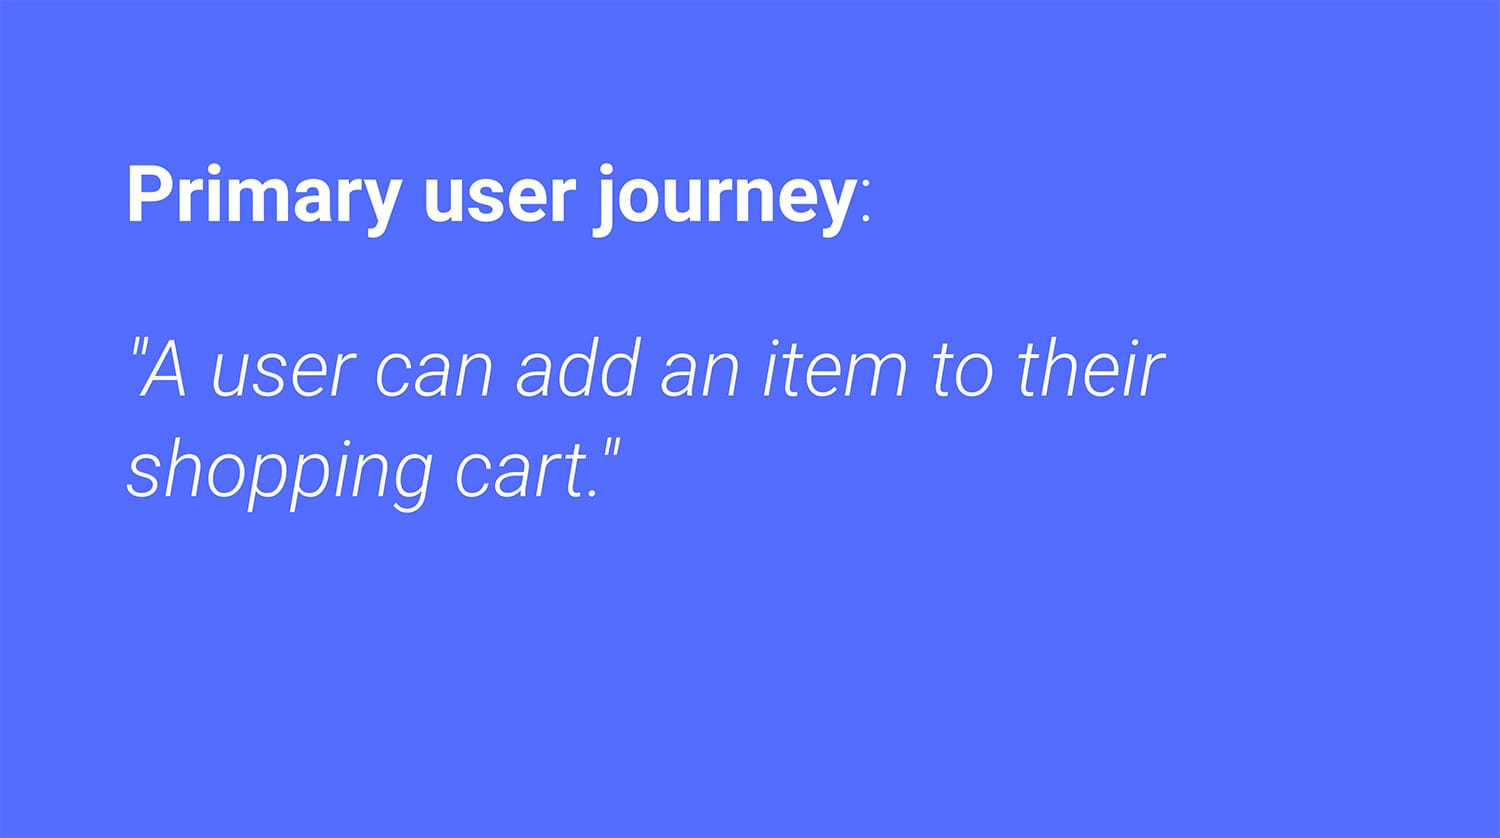 سفر کاربر اصلی: کاربر می تواند یک کالا را به سبد خرید خود اضافه کند.